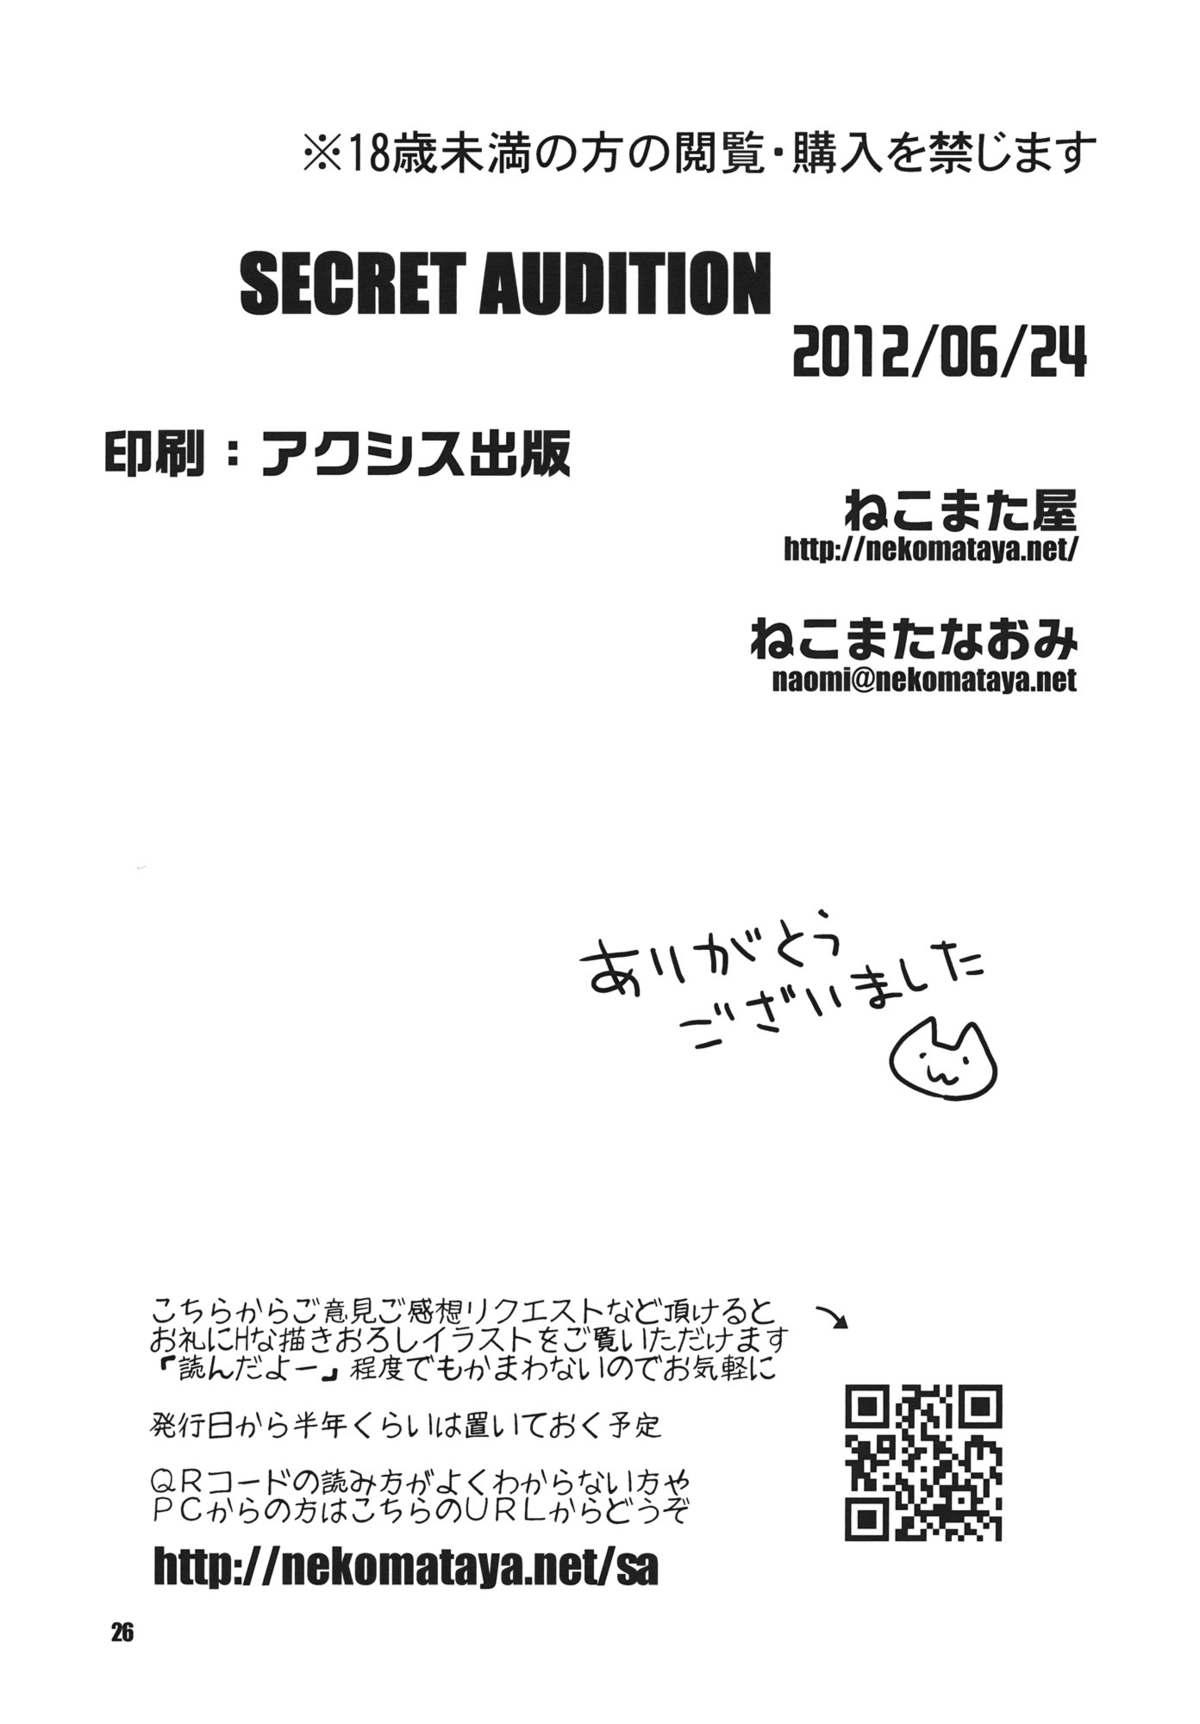 Secret Audition 24